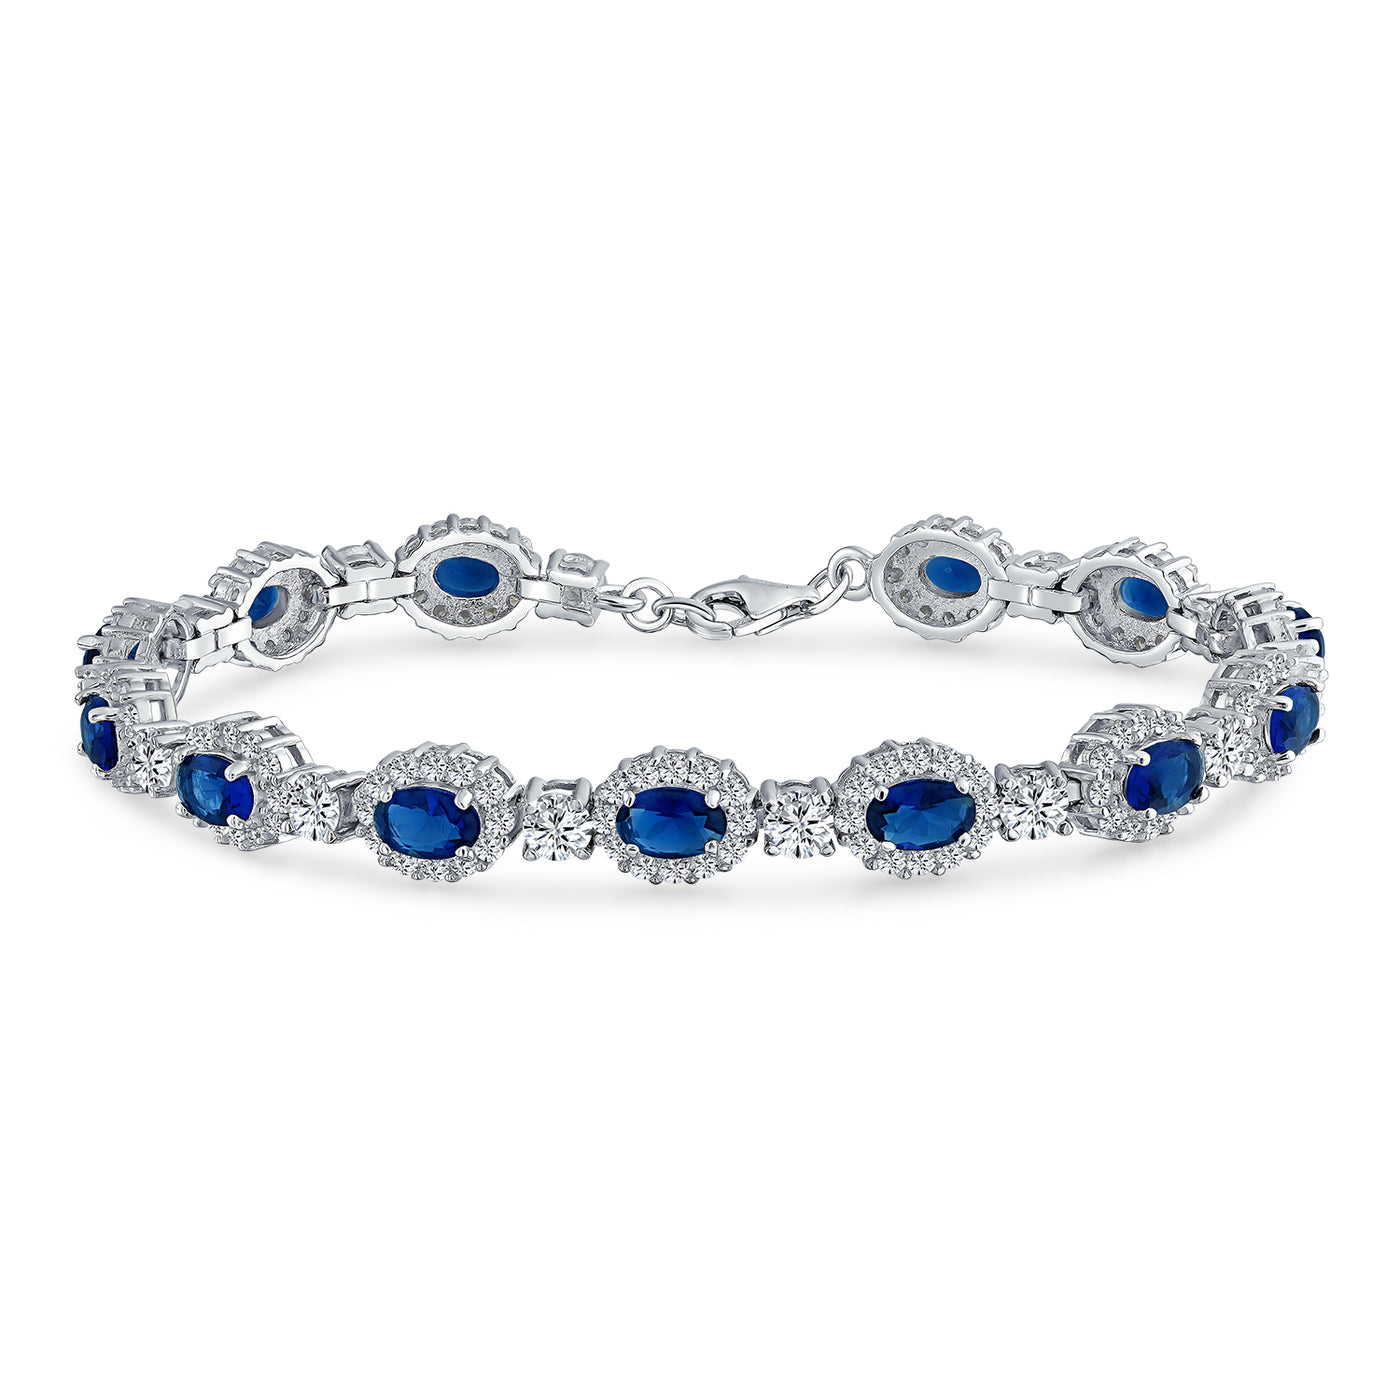 Vintage Style Halo Oval Blue CZ Imitation Sapphire Bracelet .925 Silver